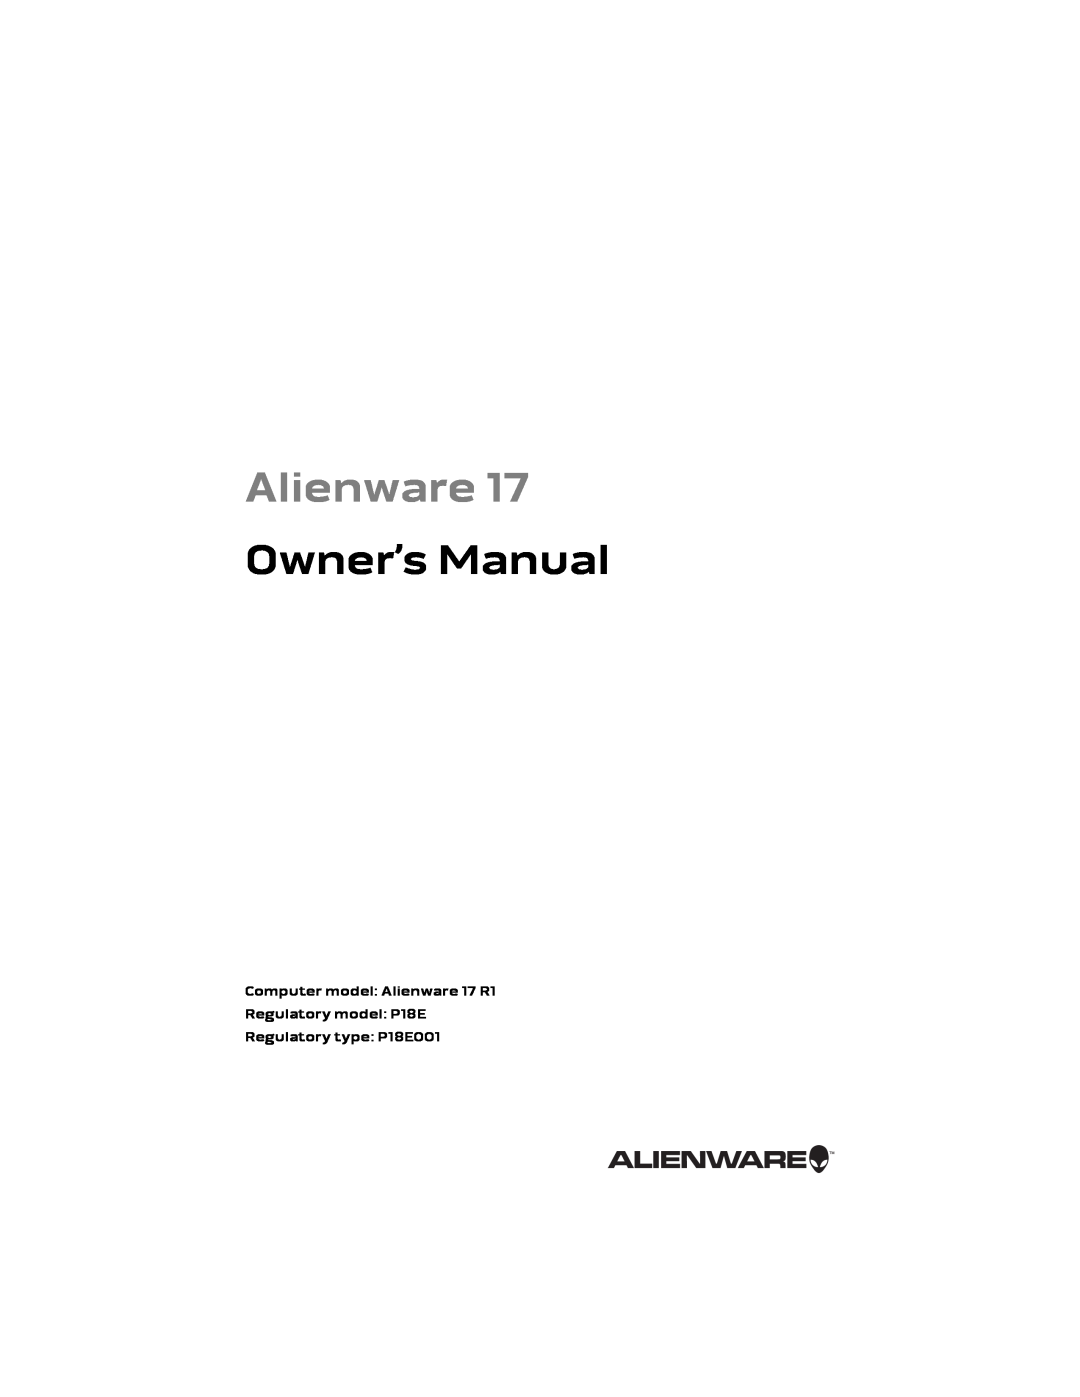 Alienware owner manual Owner’s Manual, Computer model Alienware 17 R1 Regulatory model P18E 